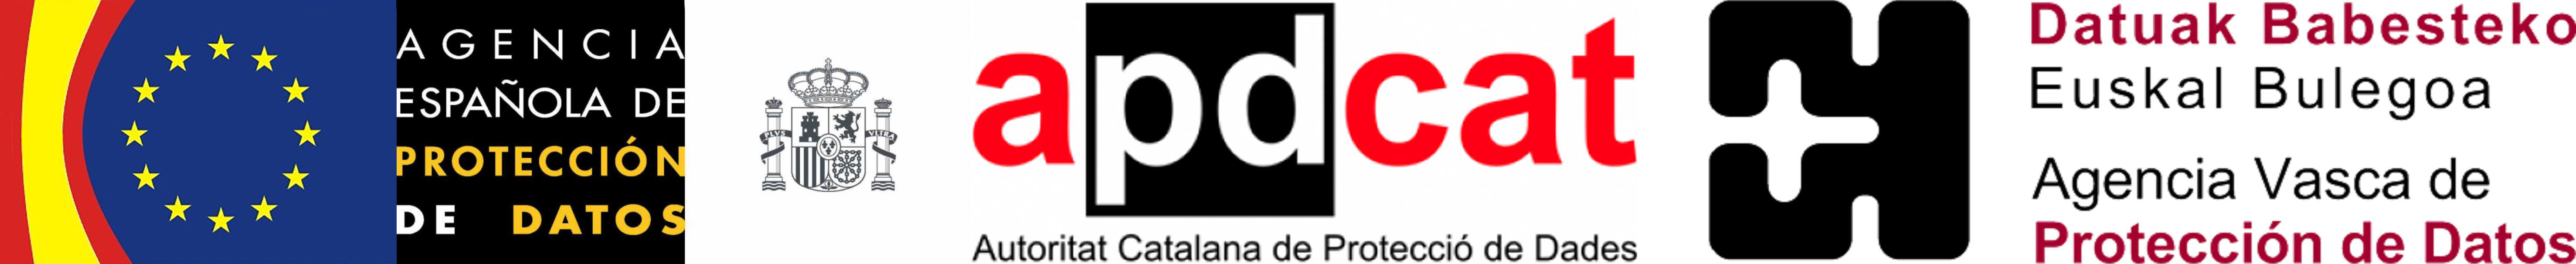 Логотип Испанского агентства по защите данных, Каталонский орган по защите данных и Баскский офис по защите данных